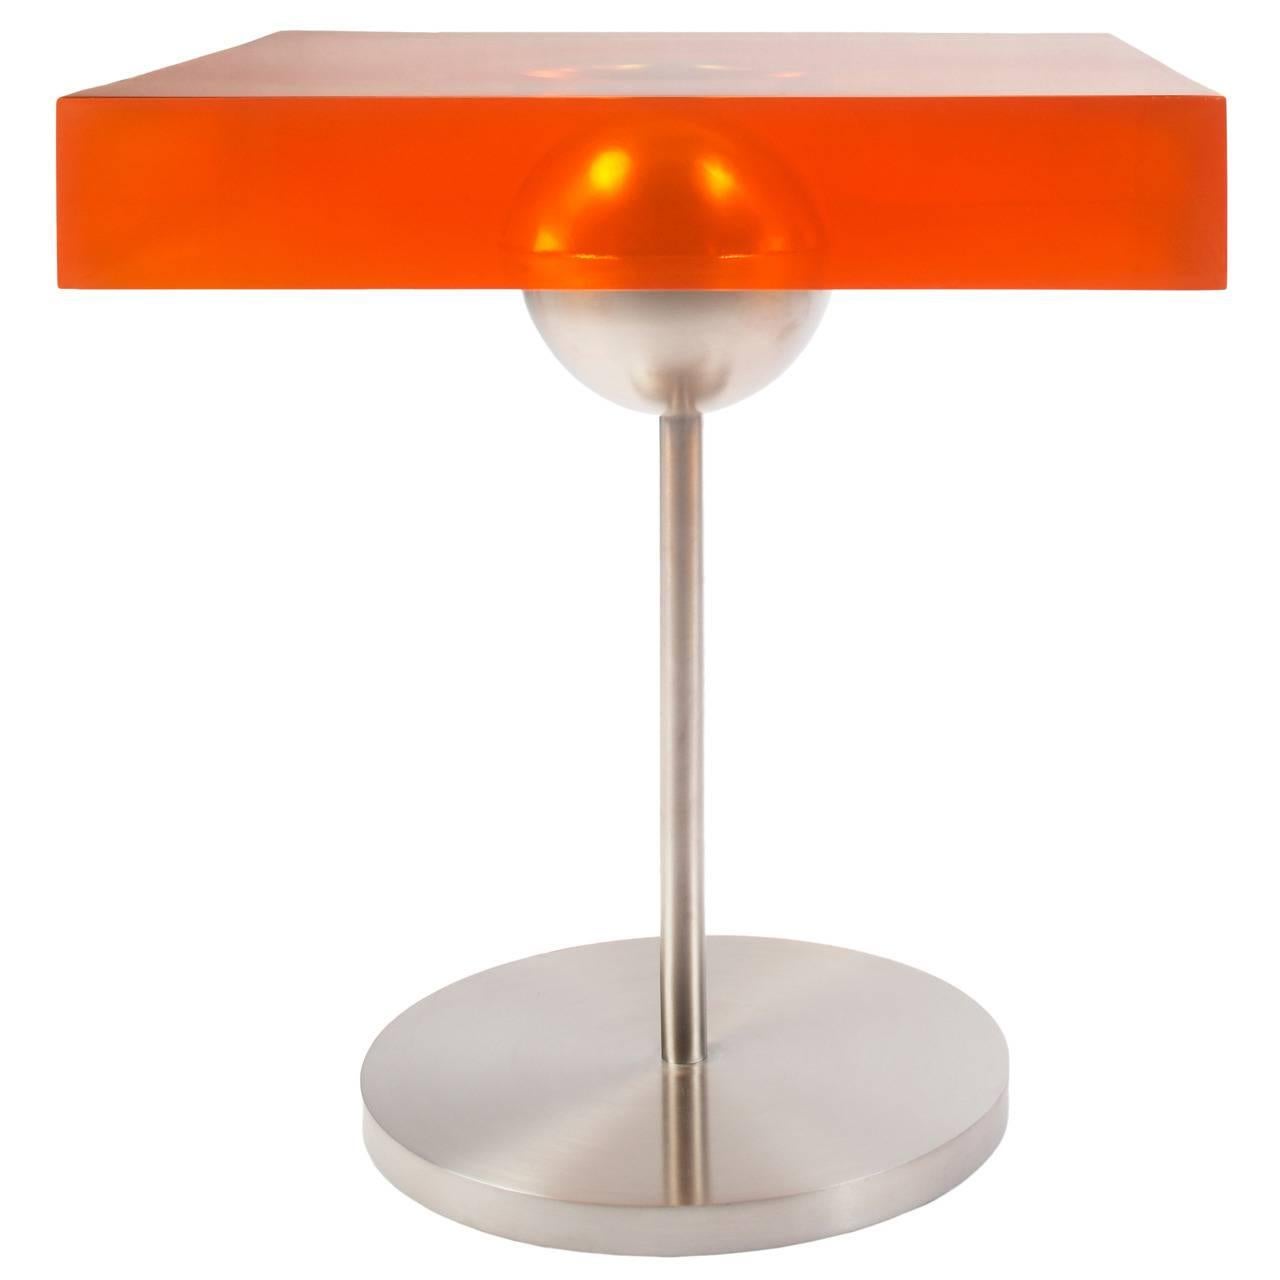 Lollypop-Tisch, entworfen von Laurie Beckerman im Jahr 2007